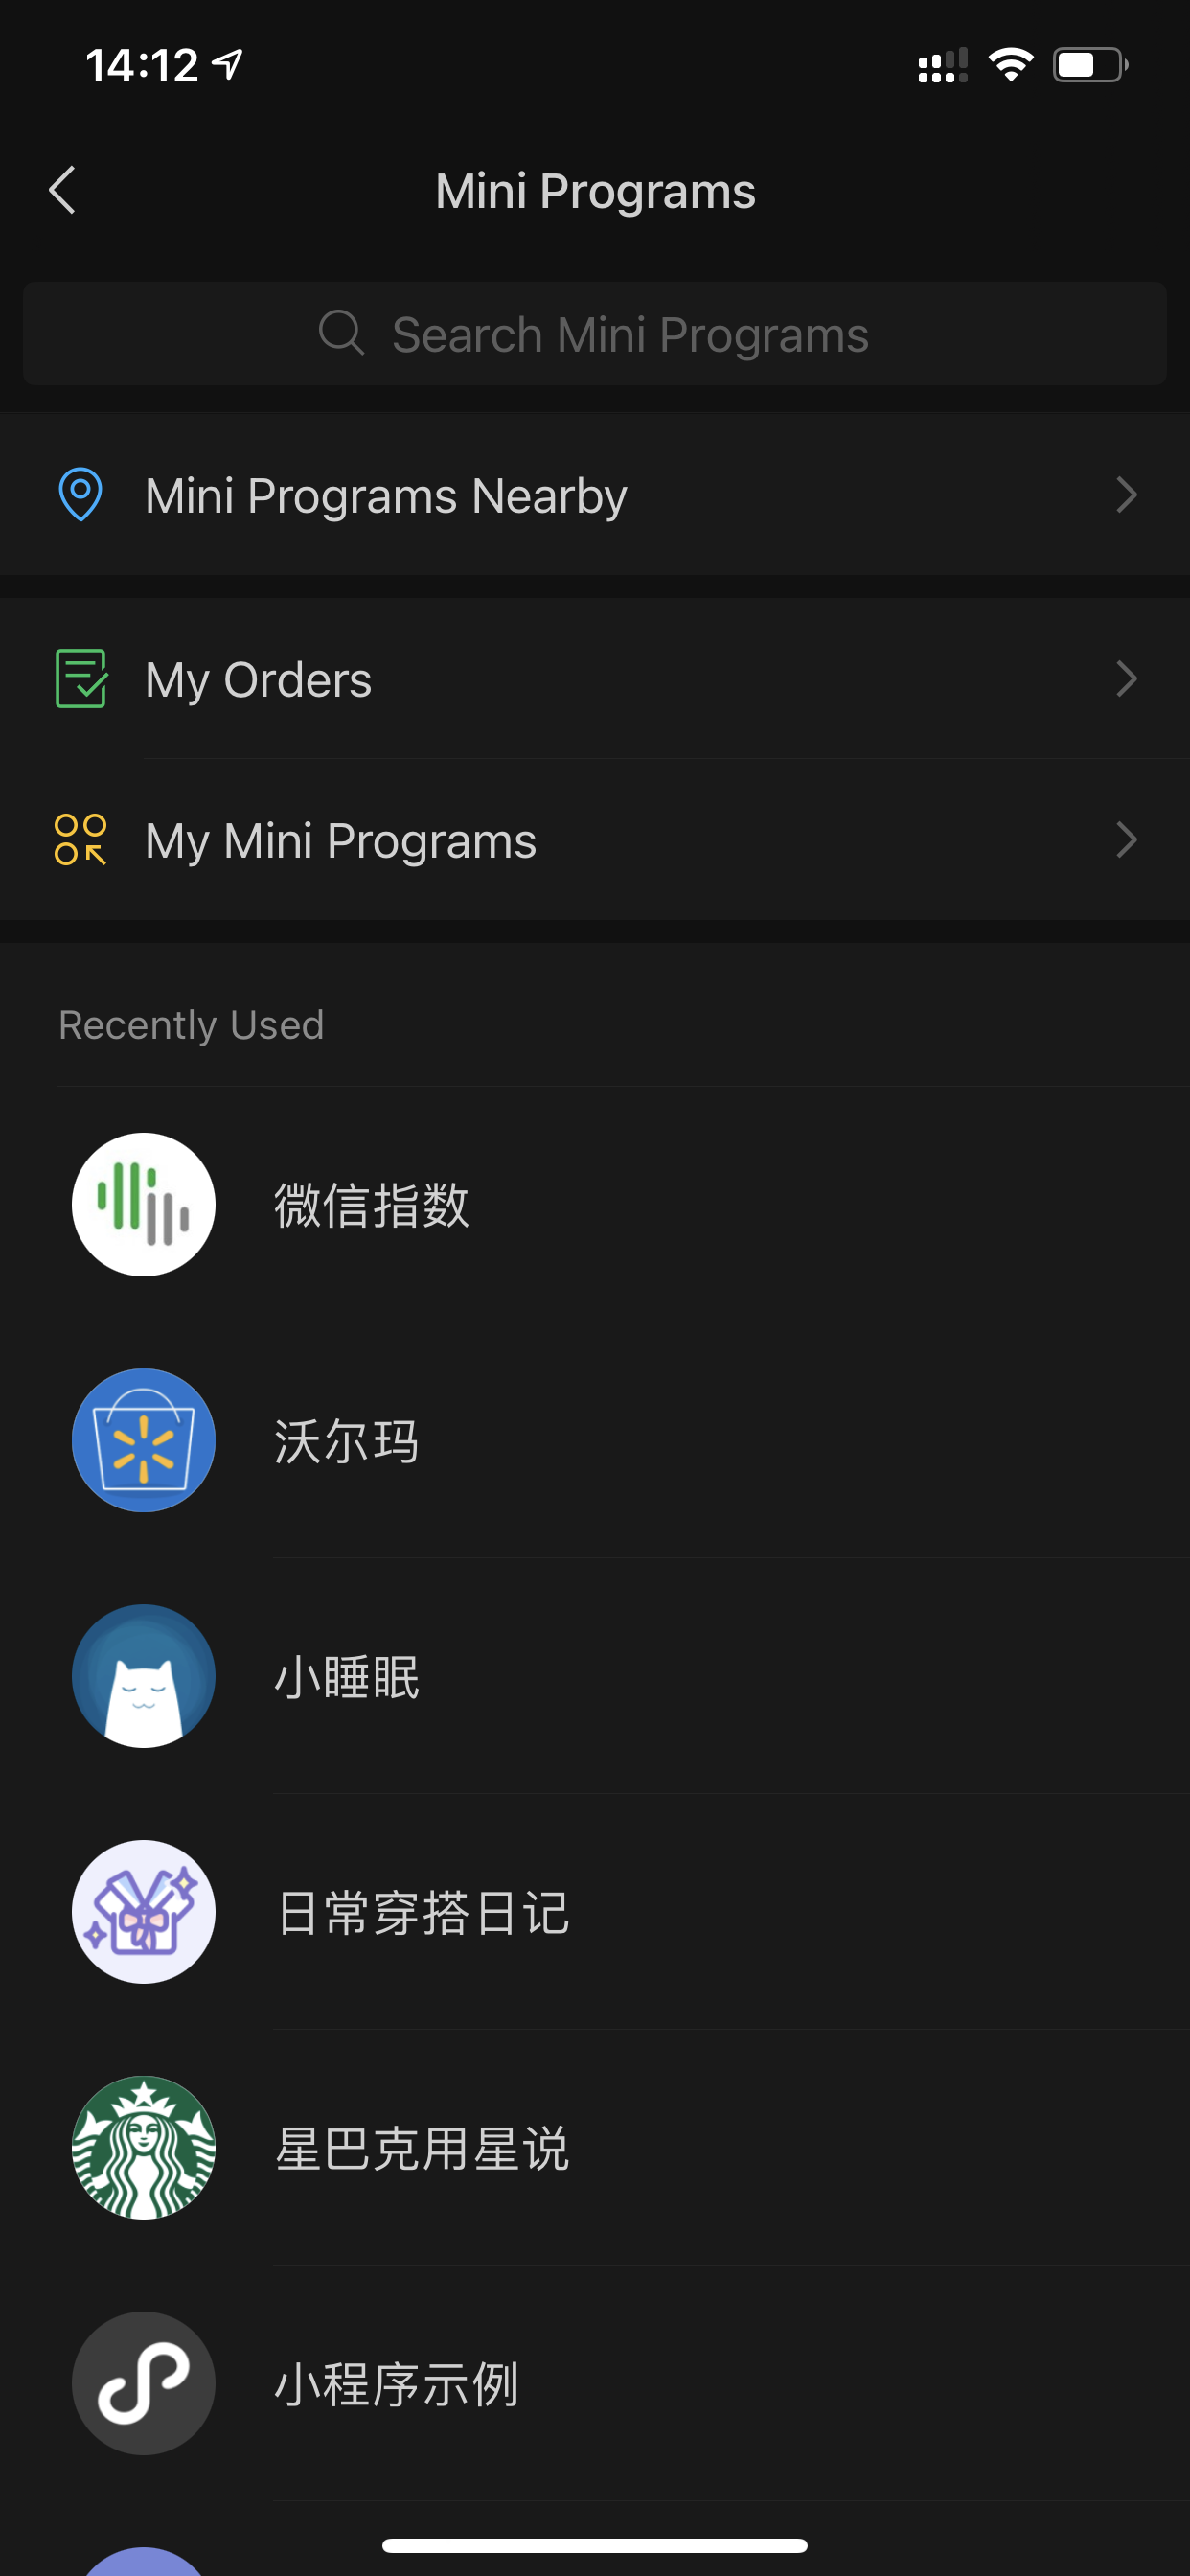 WeChat सुपर ऐप्लिकेशन में हाल ही में लॉन्च किए गए मिनी ऐप्लिकेशन की सूची.